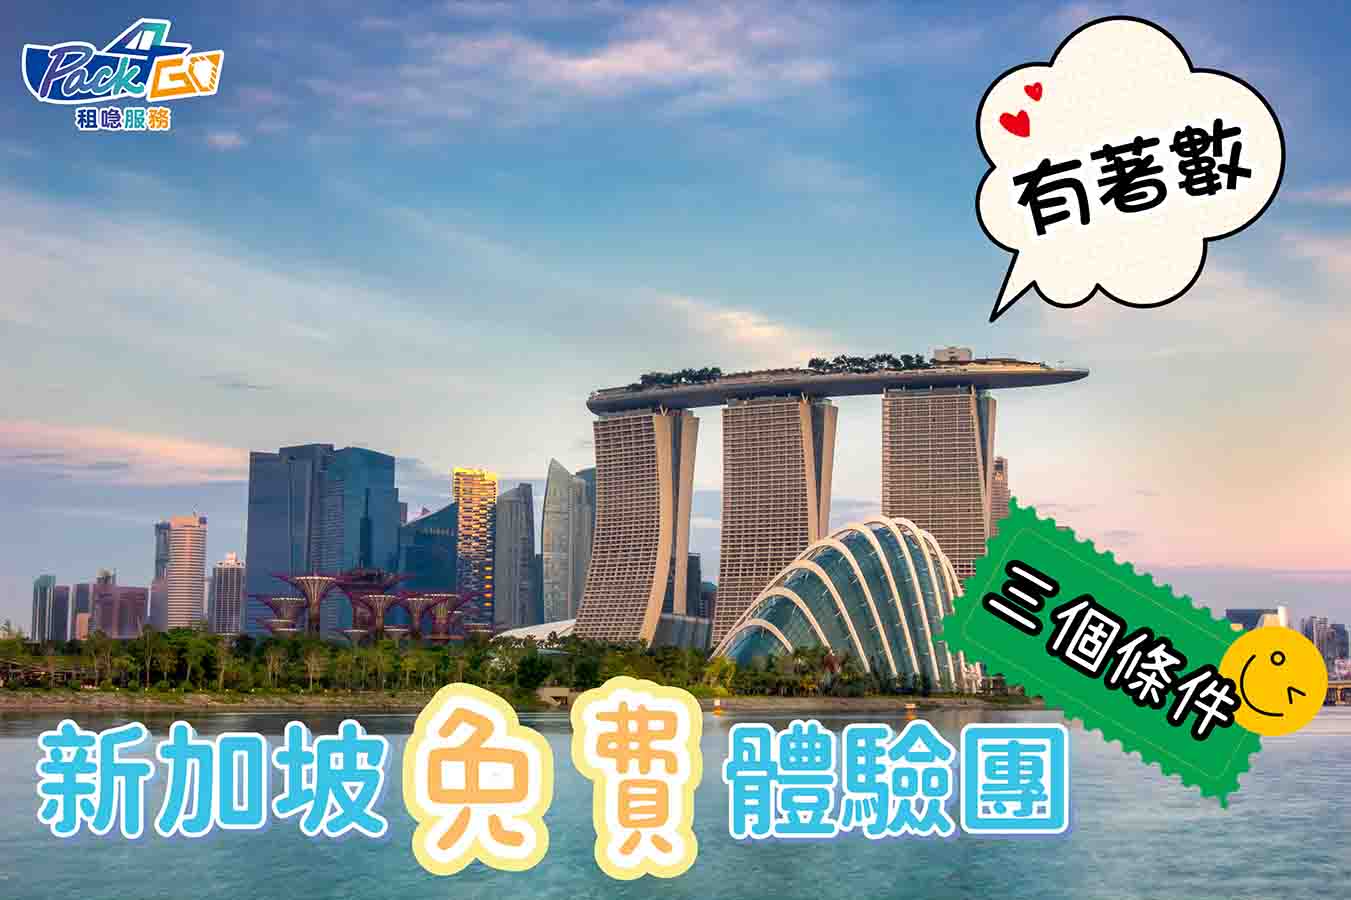 旅行優惠 新加坡旅行 免費體驗團 SingapoRewards